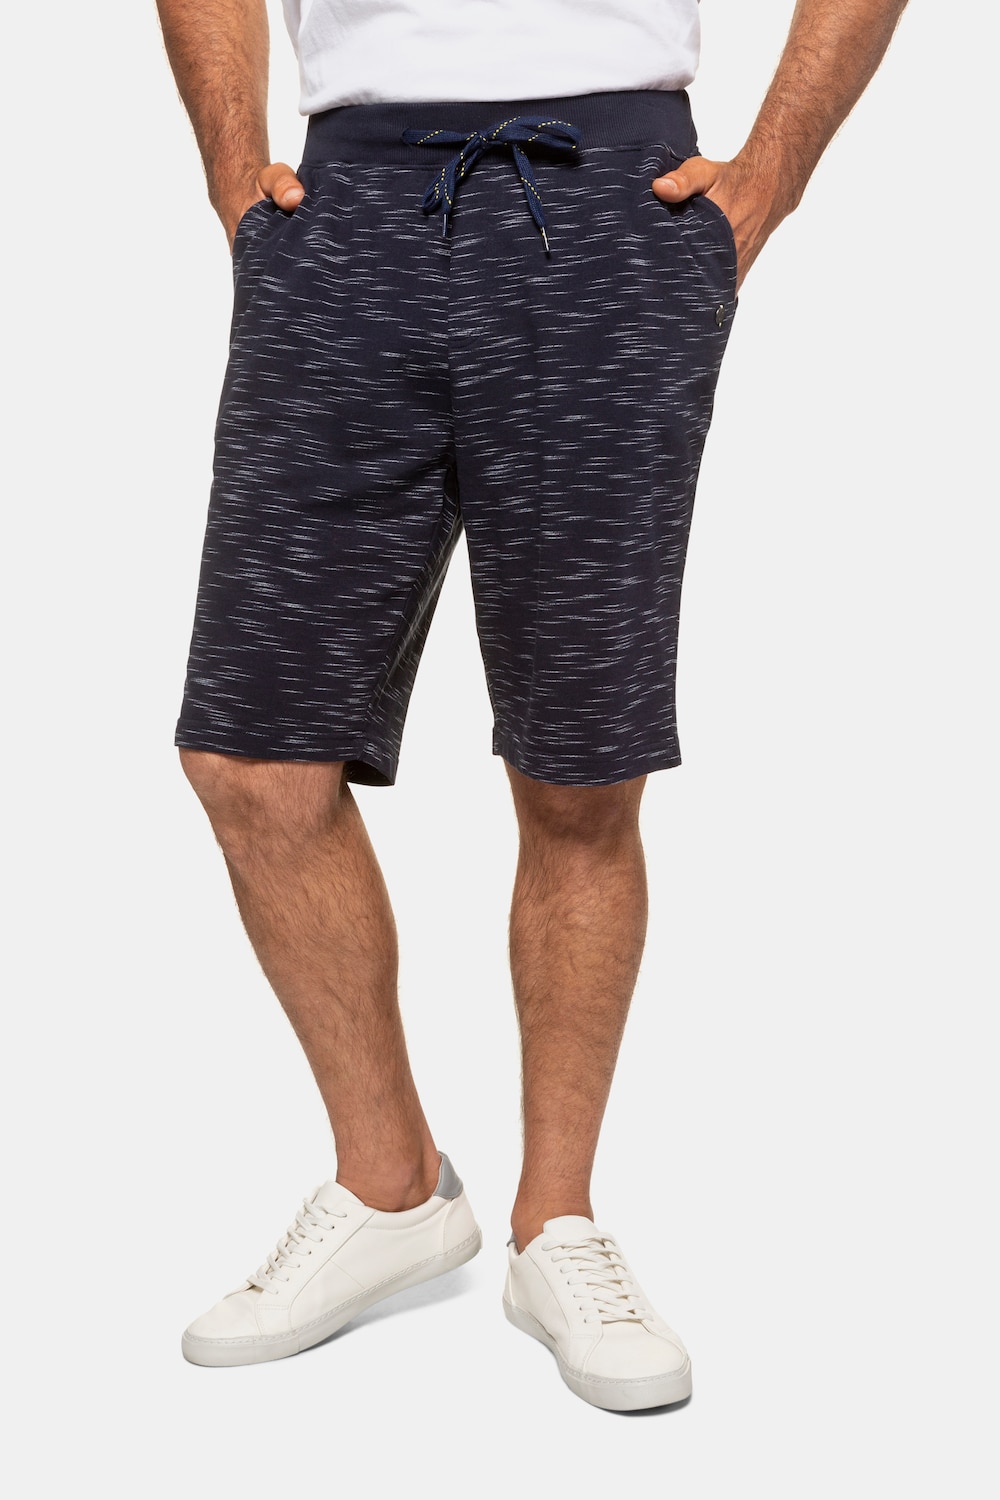 Plus Size Sweat Shorts, Man, blue, size: XL, cotton/polyester, JP1880